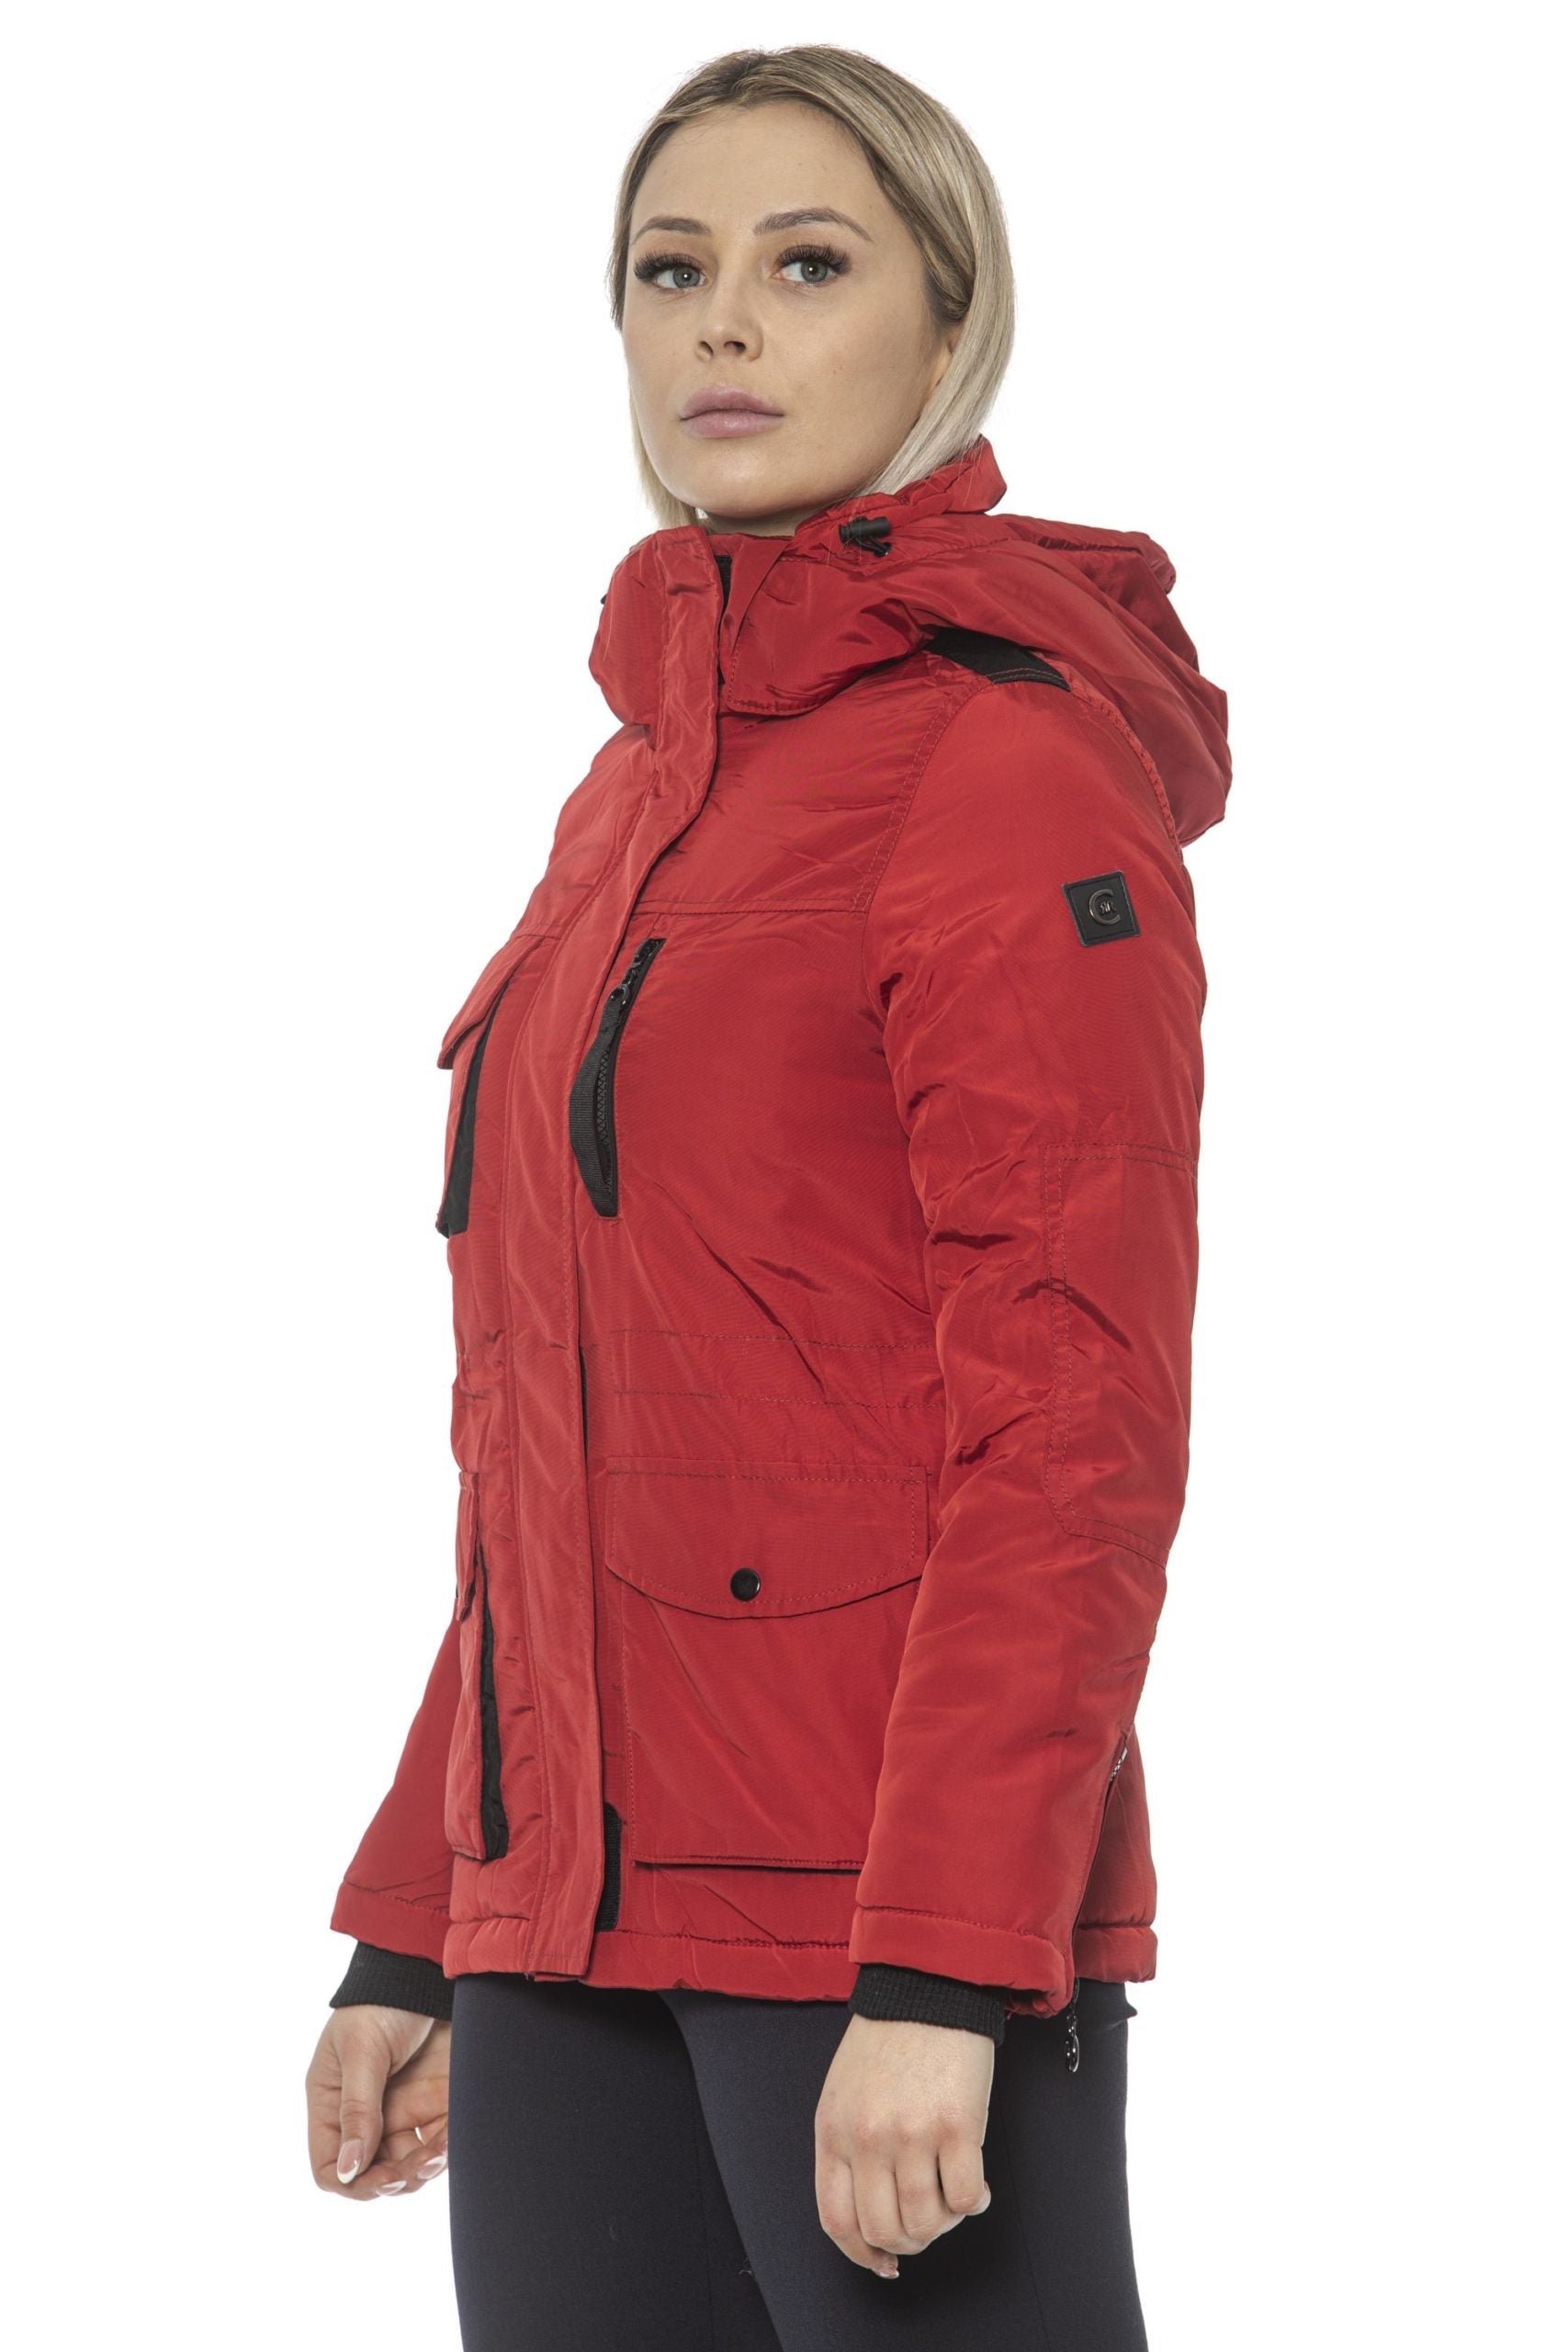 Cerruti 1881 Red Jackets Coat - Cicis Boutique